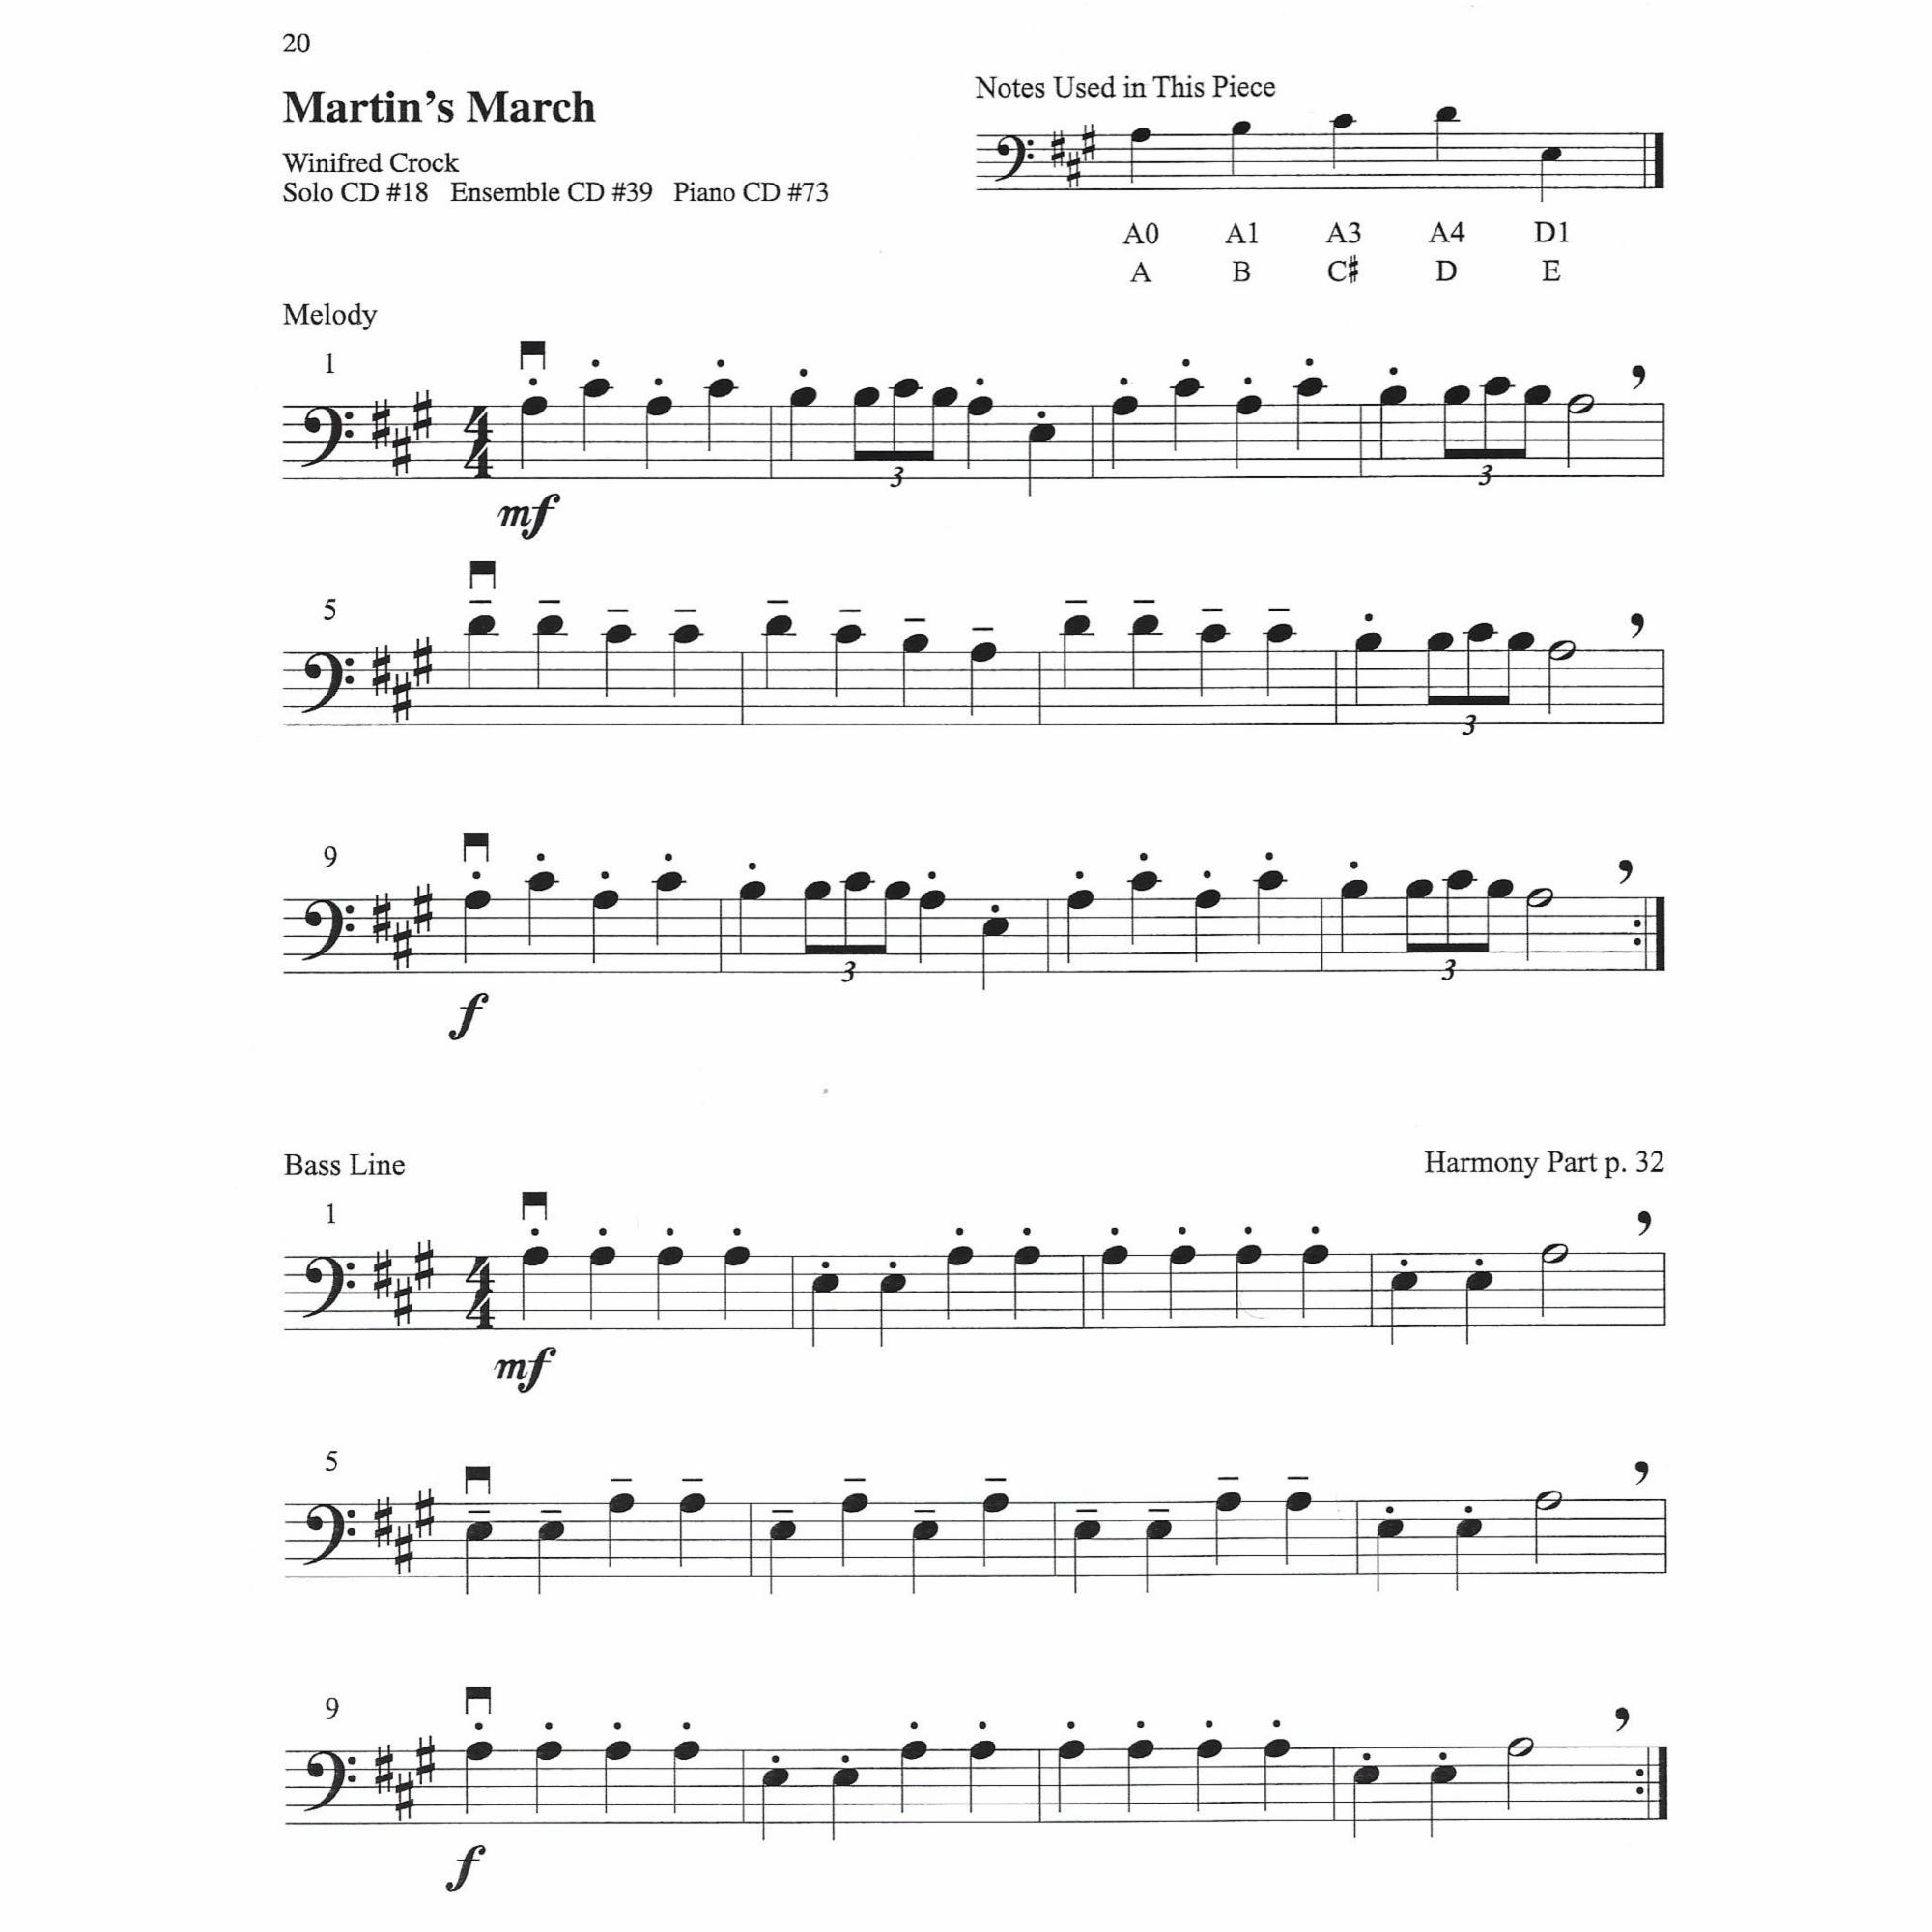 Sample: Cello (Pg. 20)